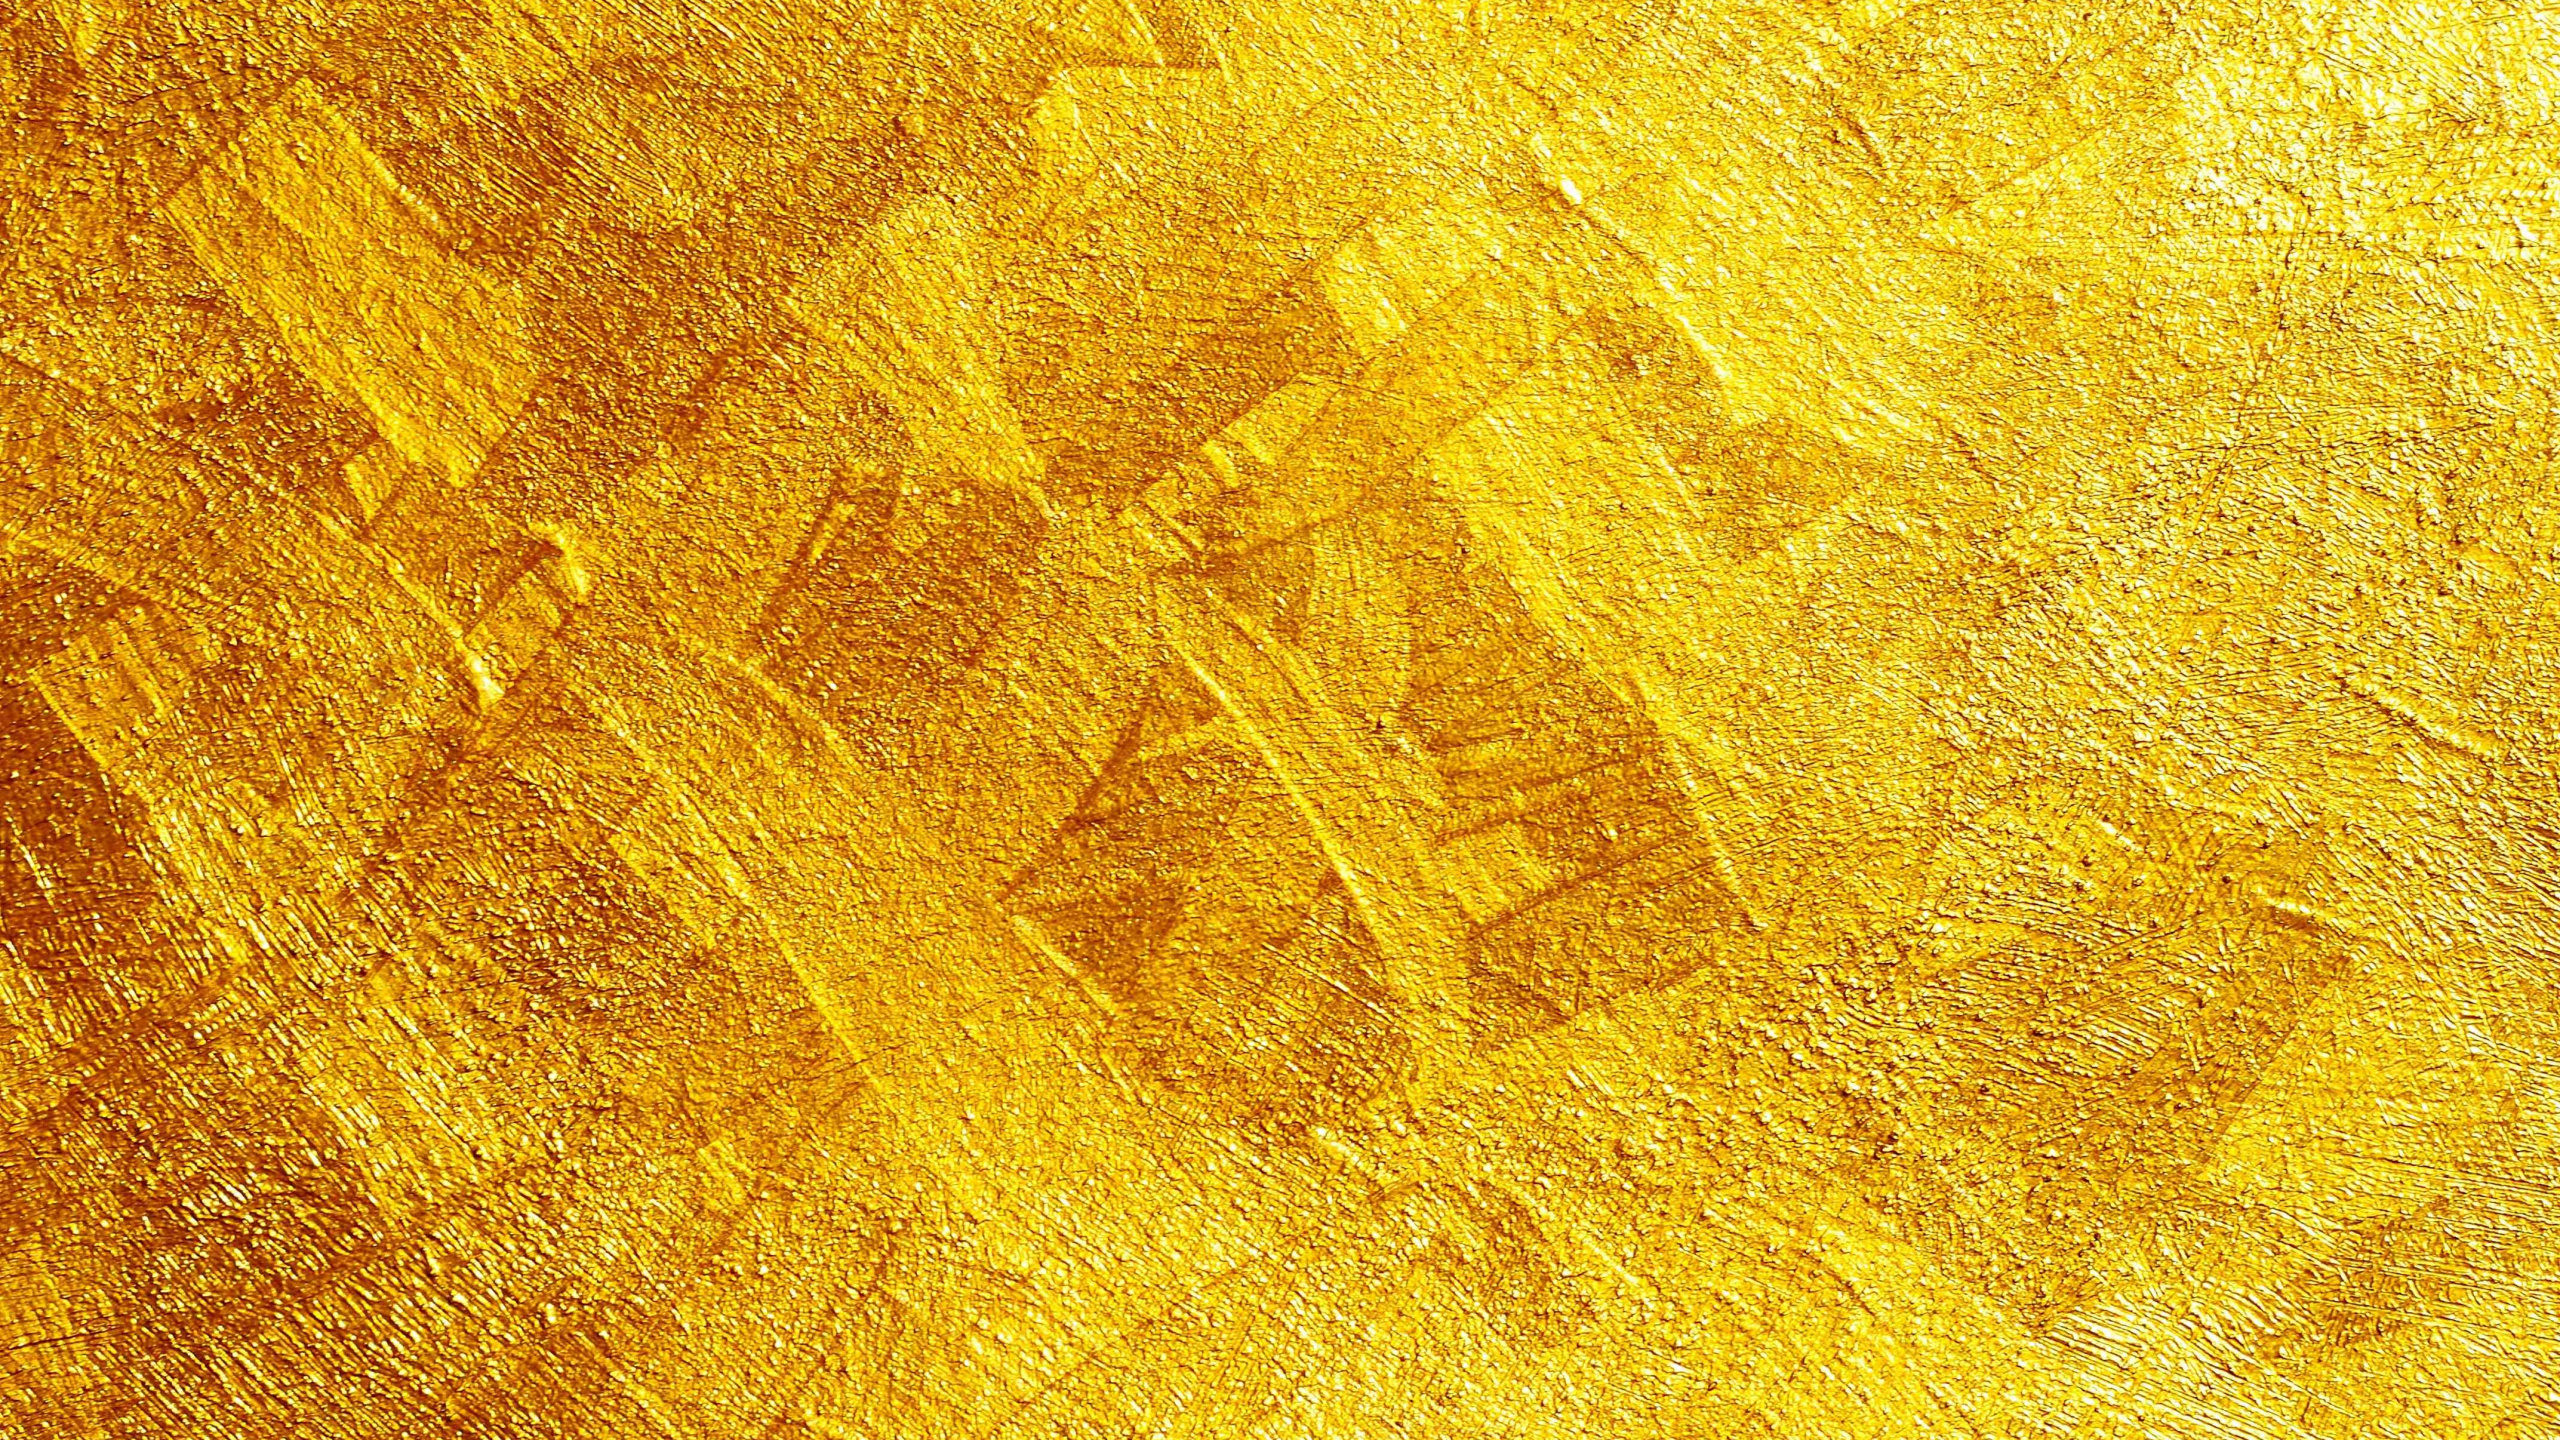 Alfombra Amarilla y Marrón. Wallpaper in 2560x1440 Resolution